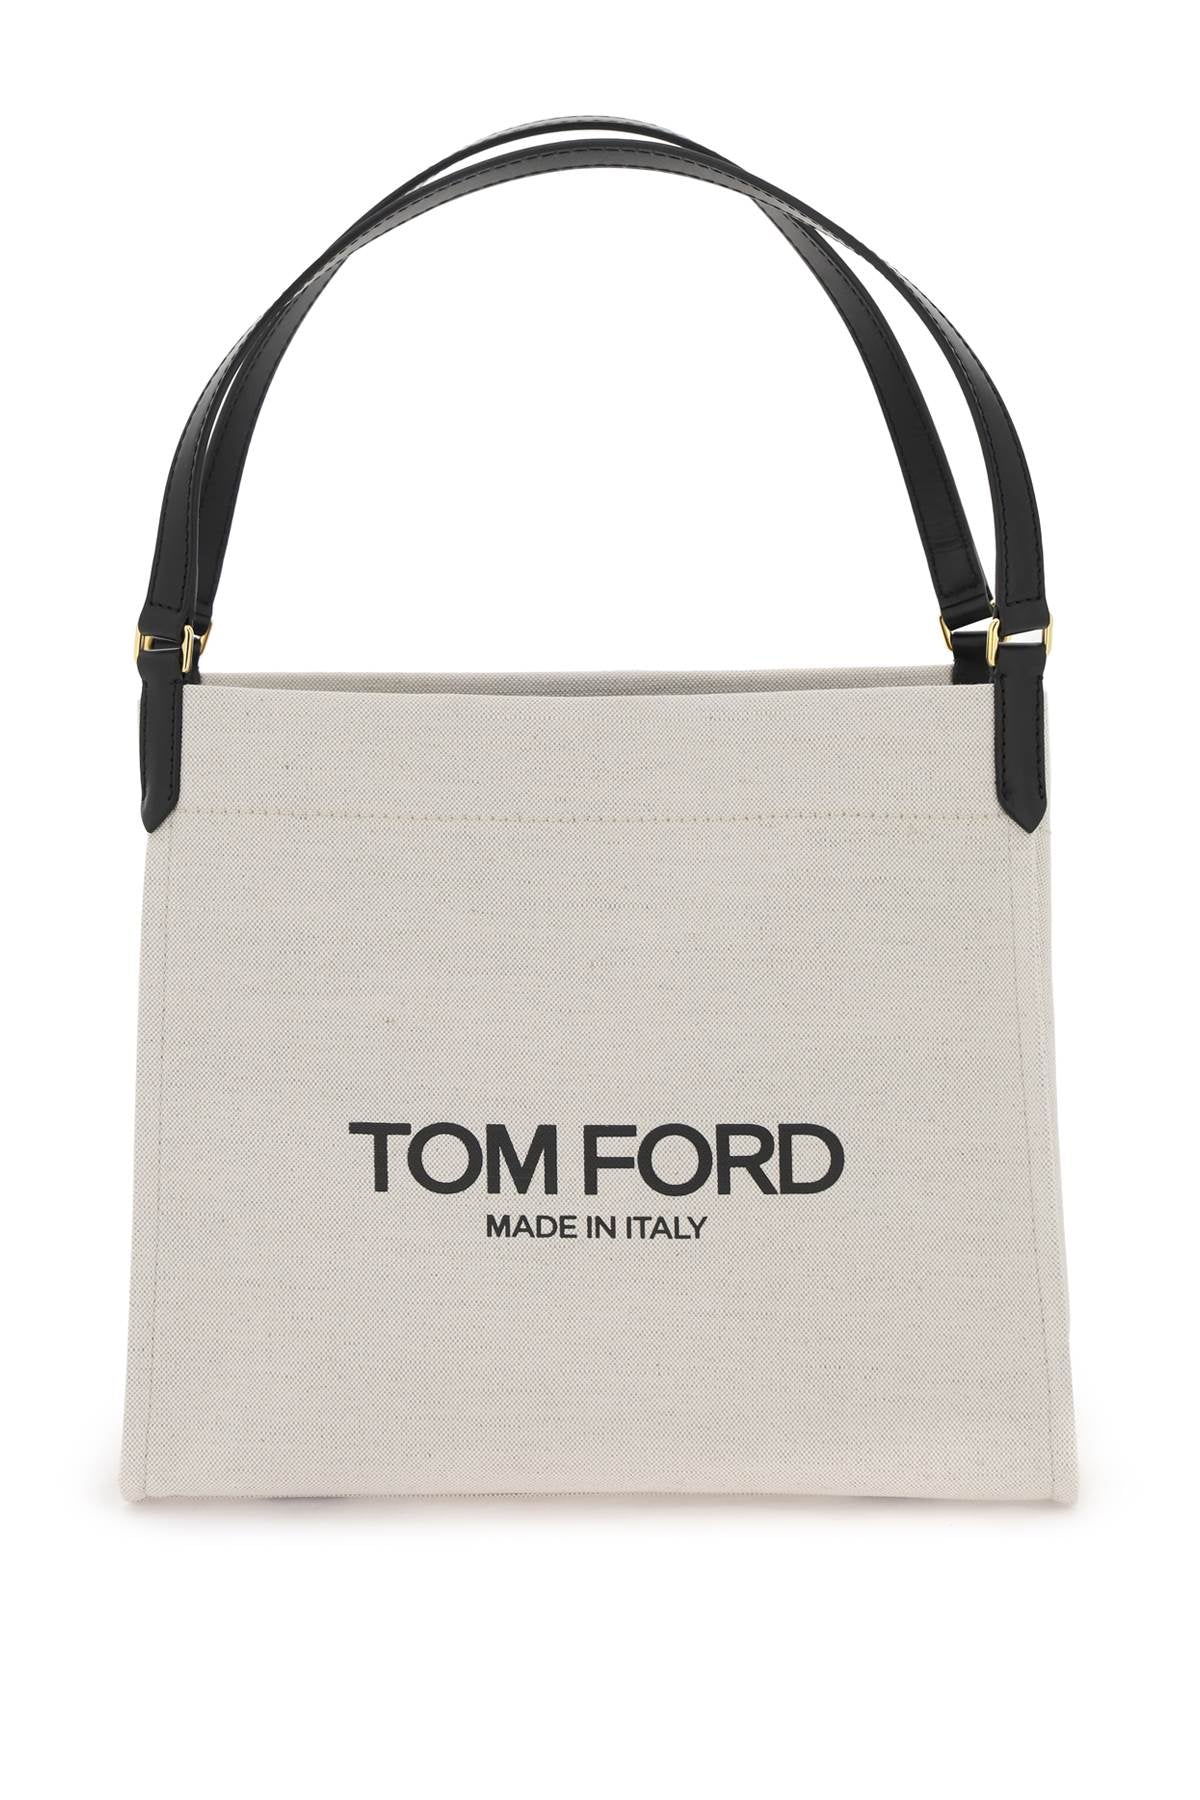 Tom Ford Amalfi Tote Bag Women